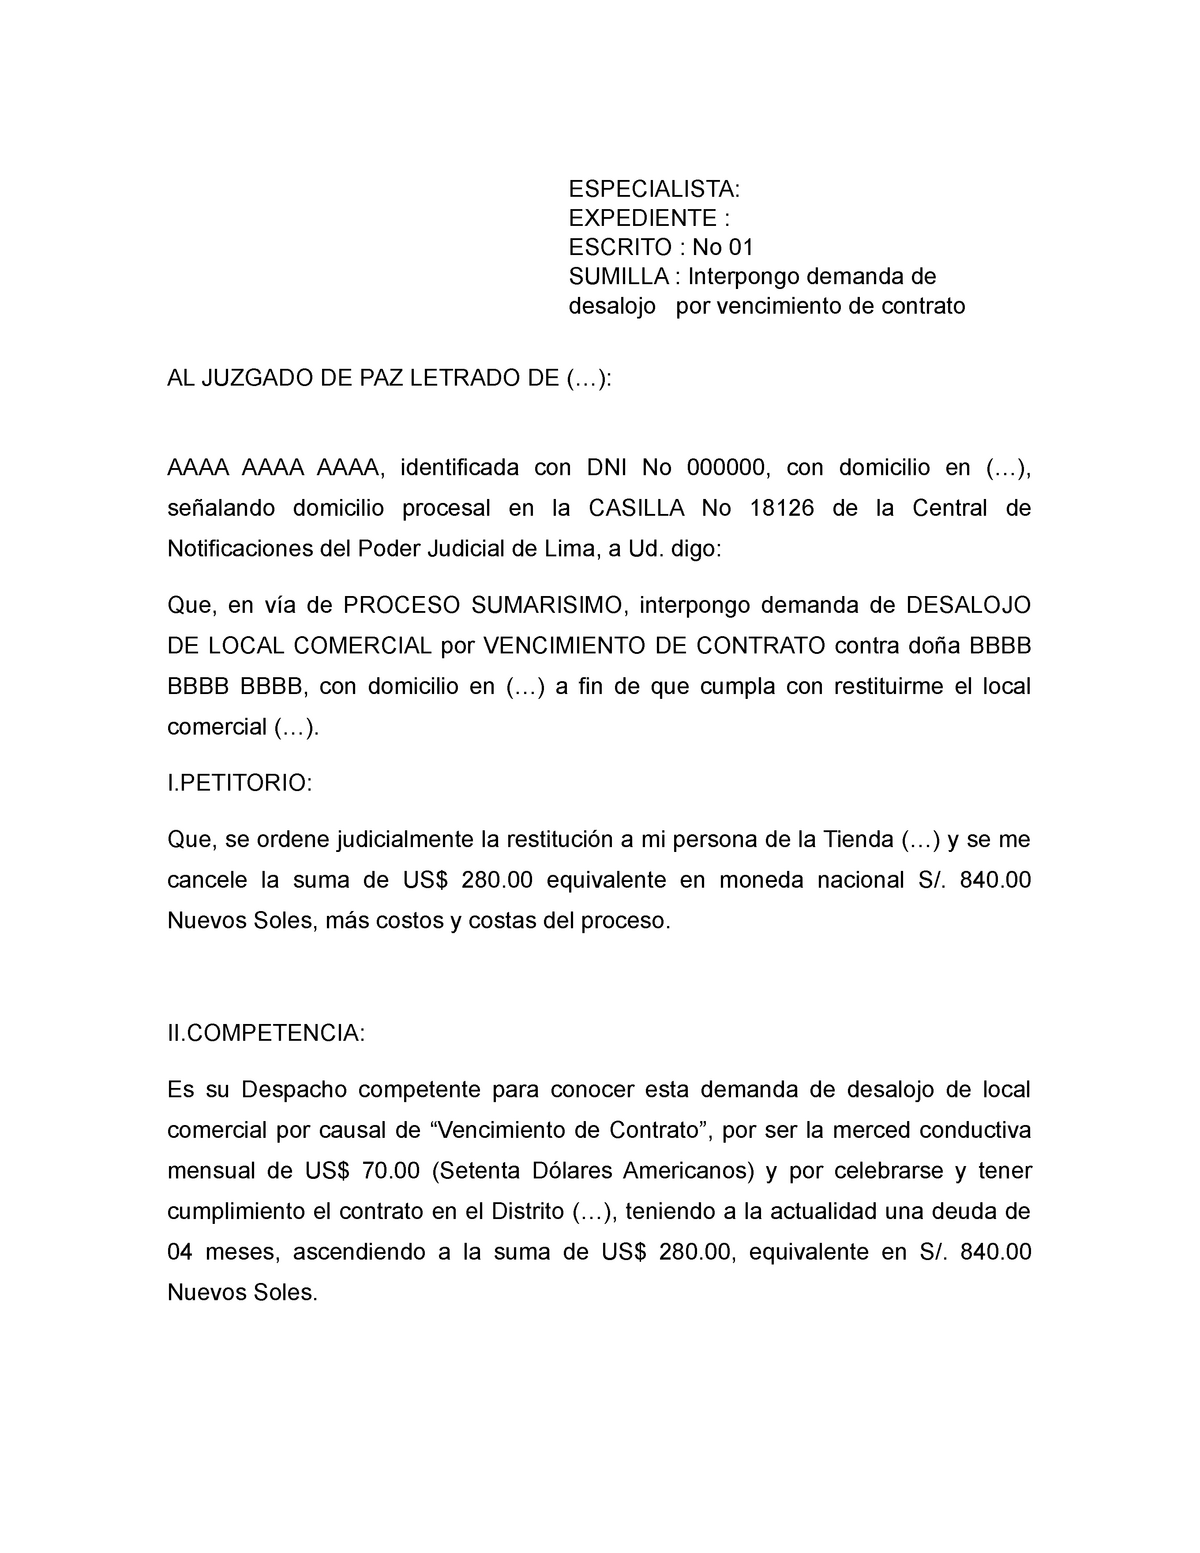 Demanda de desalojo por vencimiento de contrato - AL JUZGADO DE PAZ LETRADO  DE (...): AAAA AAAA - Studocu